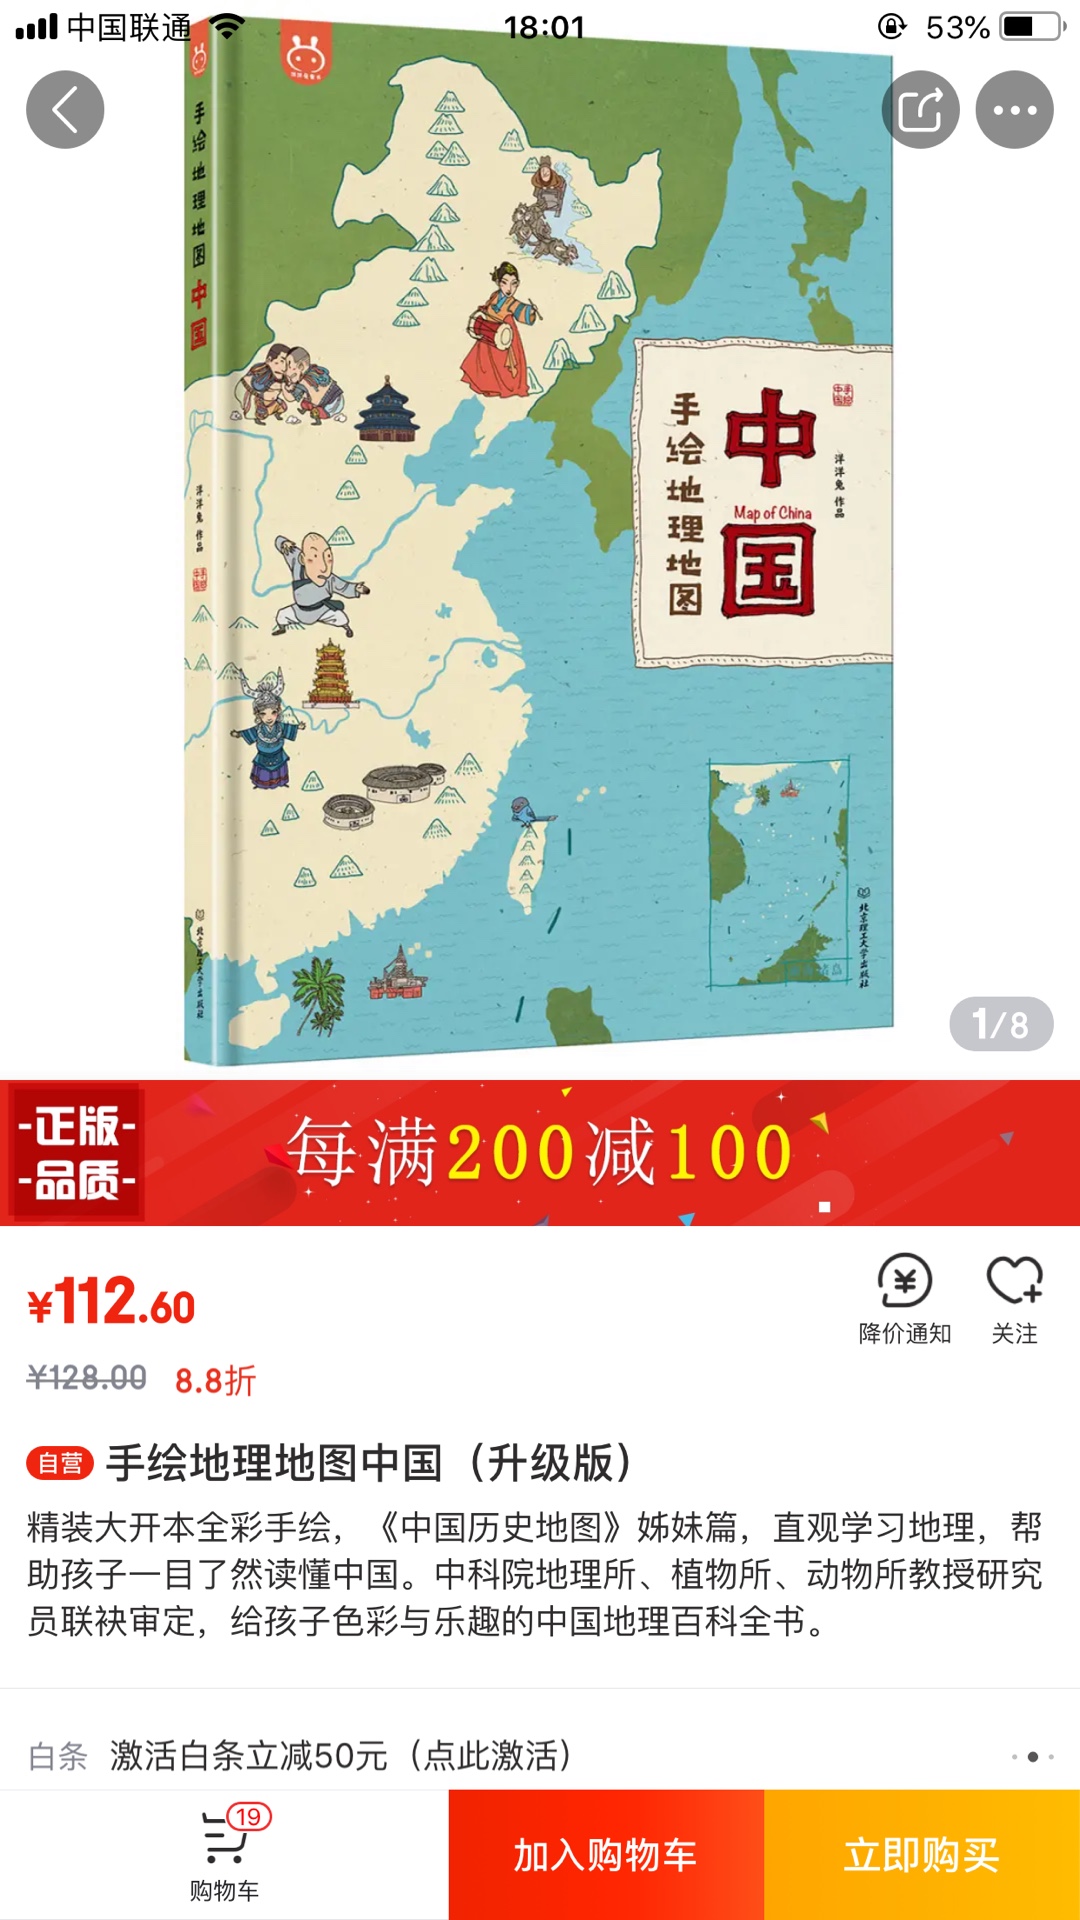 精装大开本全彩手绘，《中国历史地图》姊妹篇，直观学习地理，帮助孩子一目了然读懂中国。中科院地理所、植物所、动物所教授研究员联袂审定，给孩子色彩与乐趣的中国地理百科全书。小朋友们，你们真的了解自己的祖国吗？你们又是否真正了解过自己的家乡？在这里，不仅有名山大川的雄伟和江河湖海的辽阔；还有56个民族的风土人情,48个自然生态地质公园,500余种珍惜野生动植物，237个非物质文化遗产，454处历史名胜古迹，还有交通、矿产、美食、人物……当然，《中国》带给你的，不仅仅是这些丰富的知识,还有不一样的眼界，和行万里路的快乐。上万幅手绘图，将风景名胜、历史人文、山川河流、还有童年的记忆串起来！这本8开大地图书，可以让你们畅游穿梭在高原雪山、大漠孤烟、江南古镇或者辽阔的草原。本书还特别为小读者们赠送了一张世界遗产大挂图。现在开始，带着地图去旅行吧！